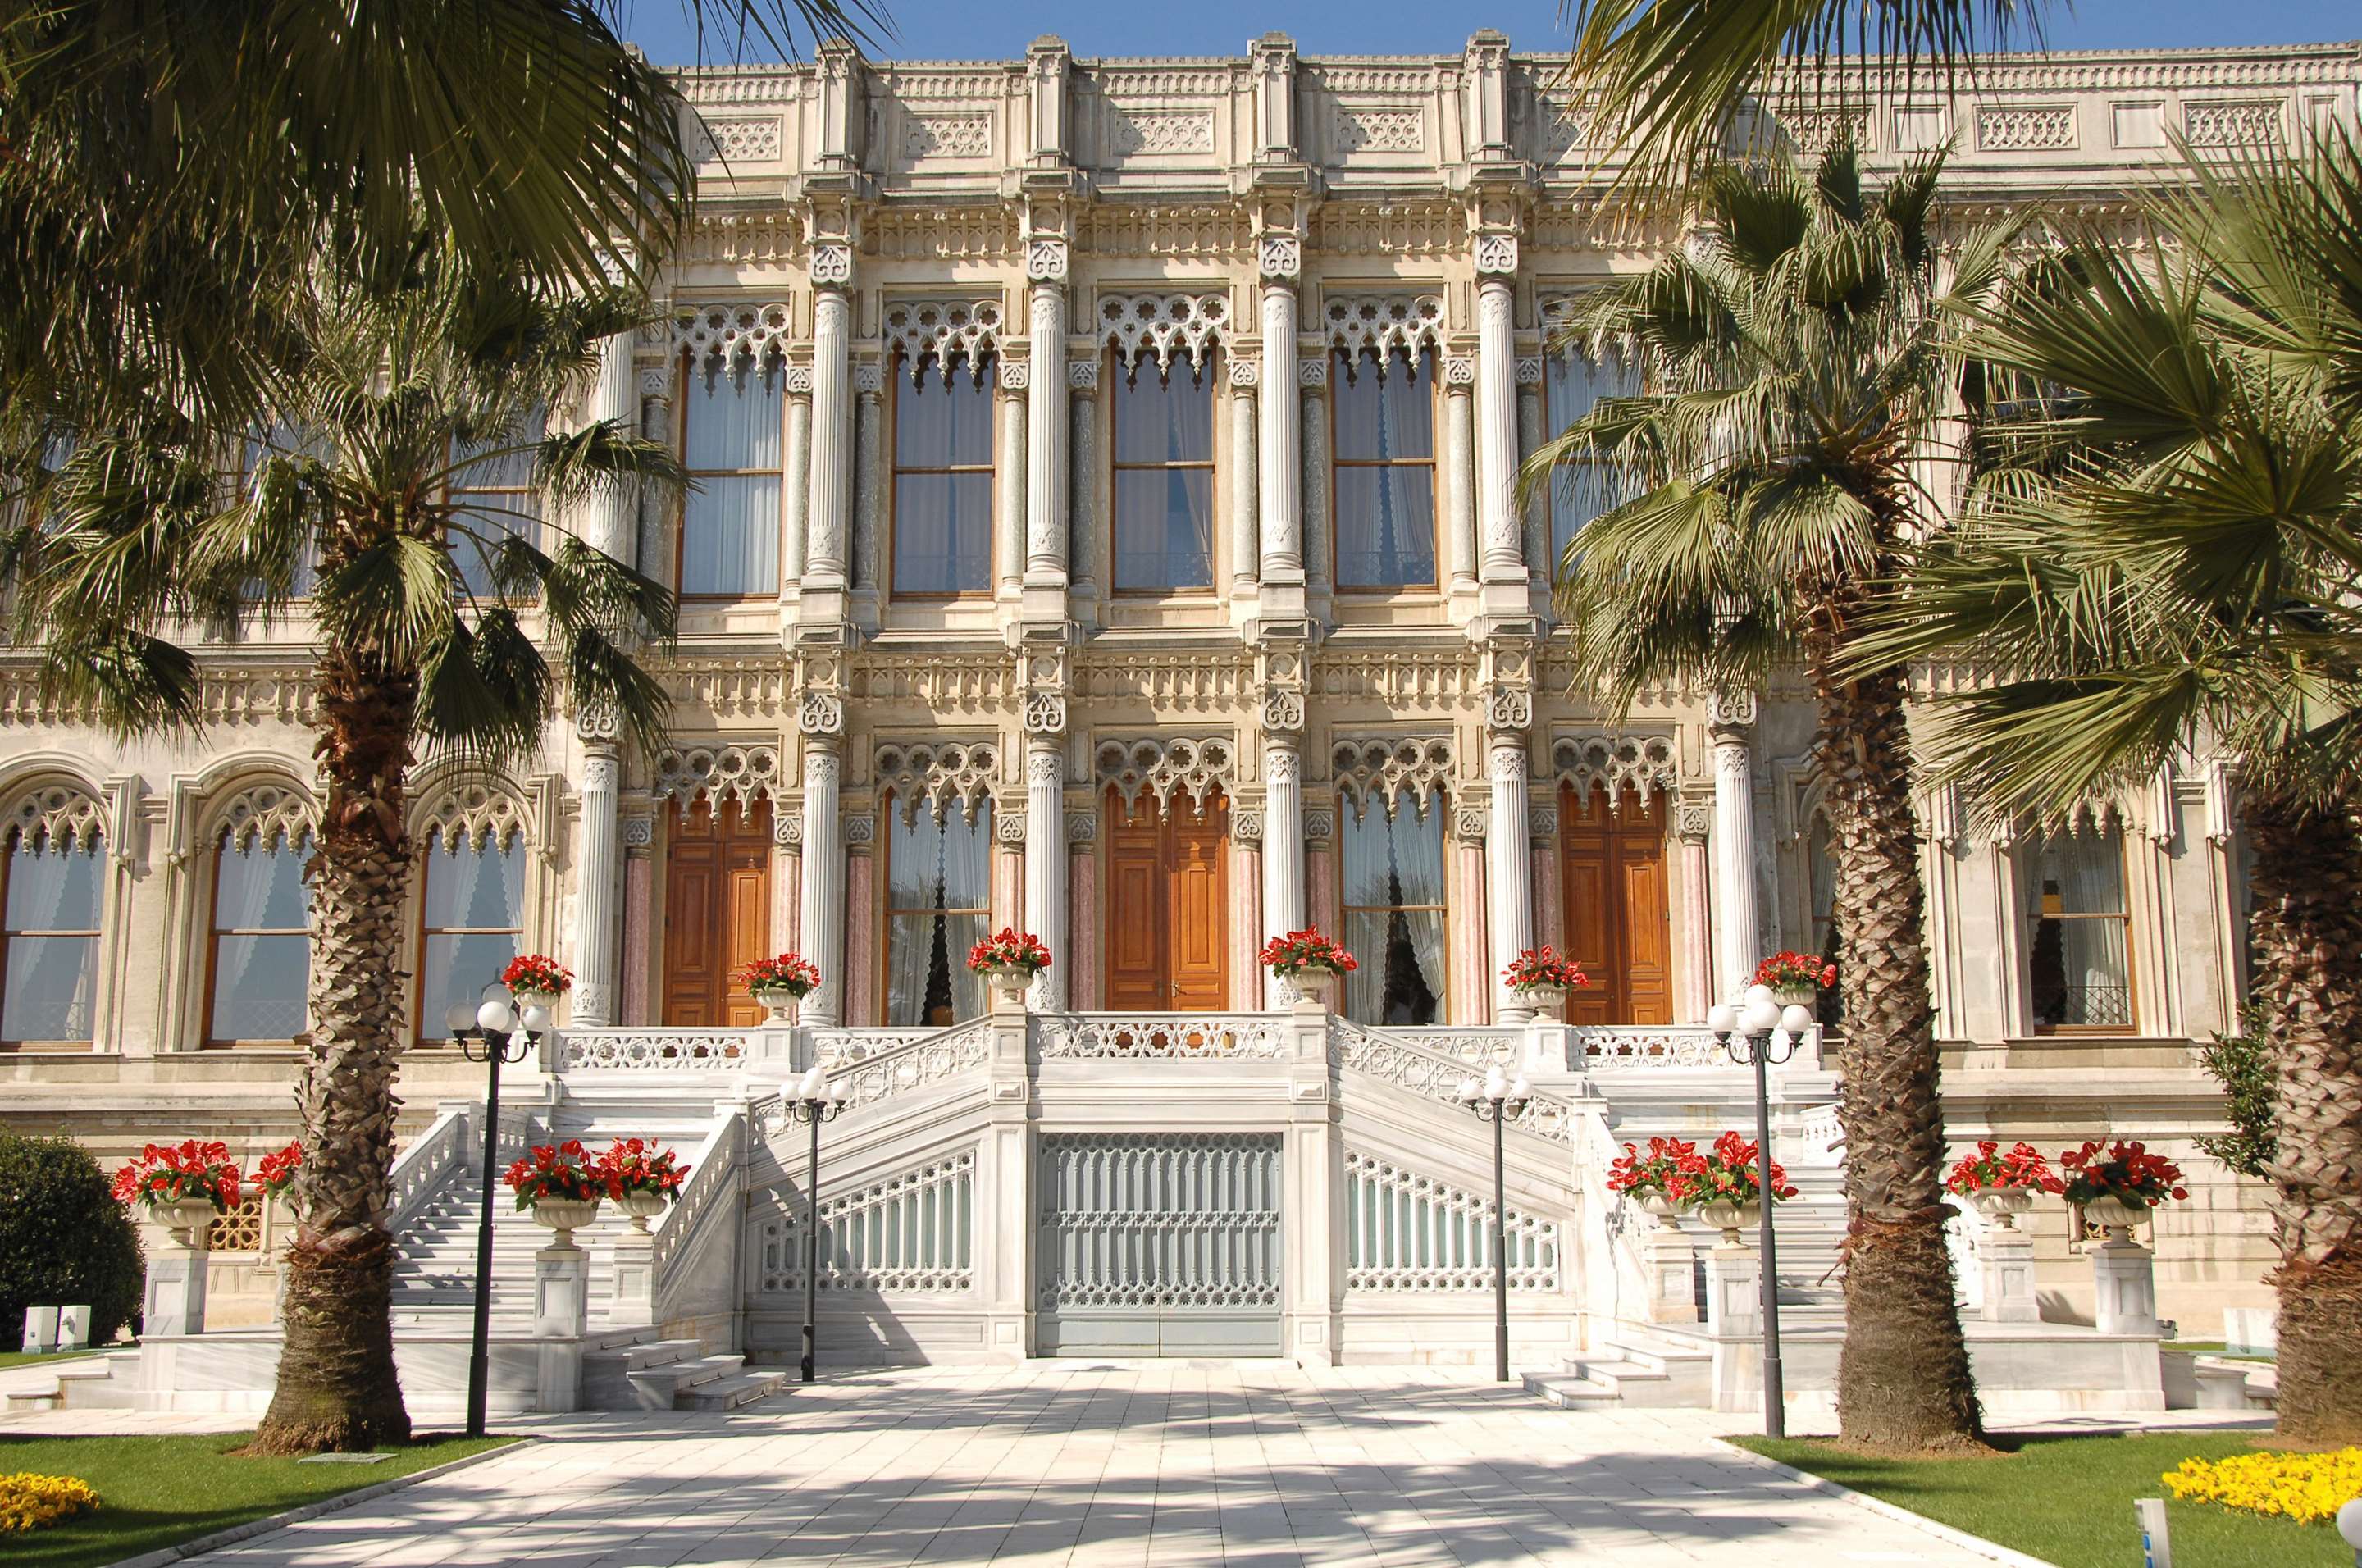 Ciragan Palace Kempinski